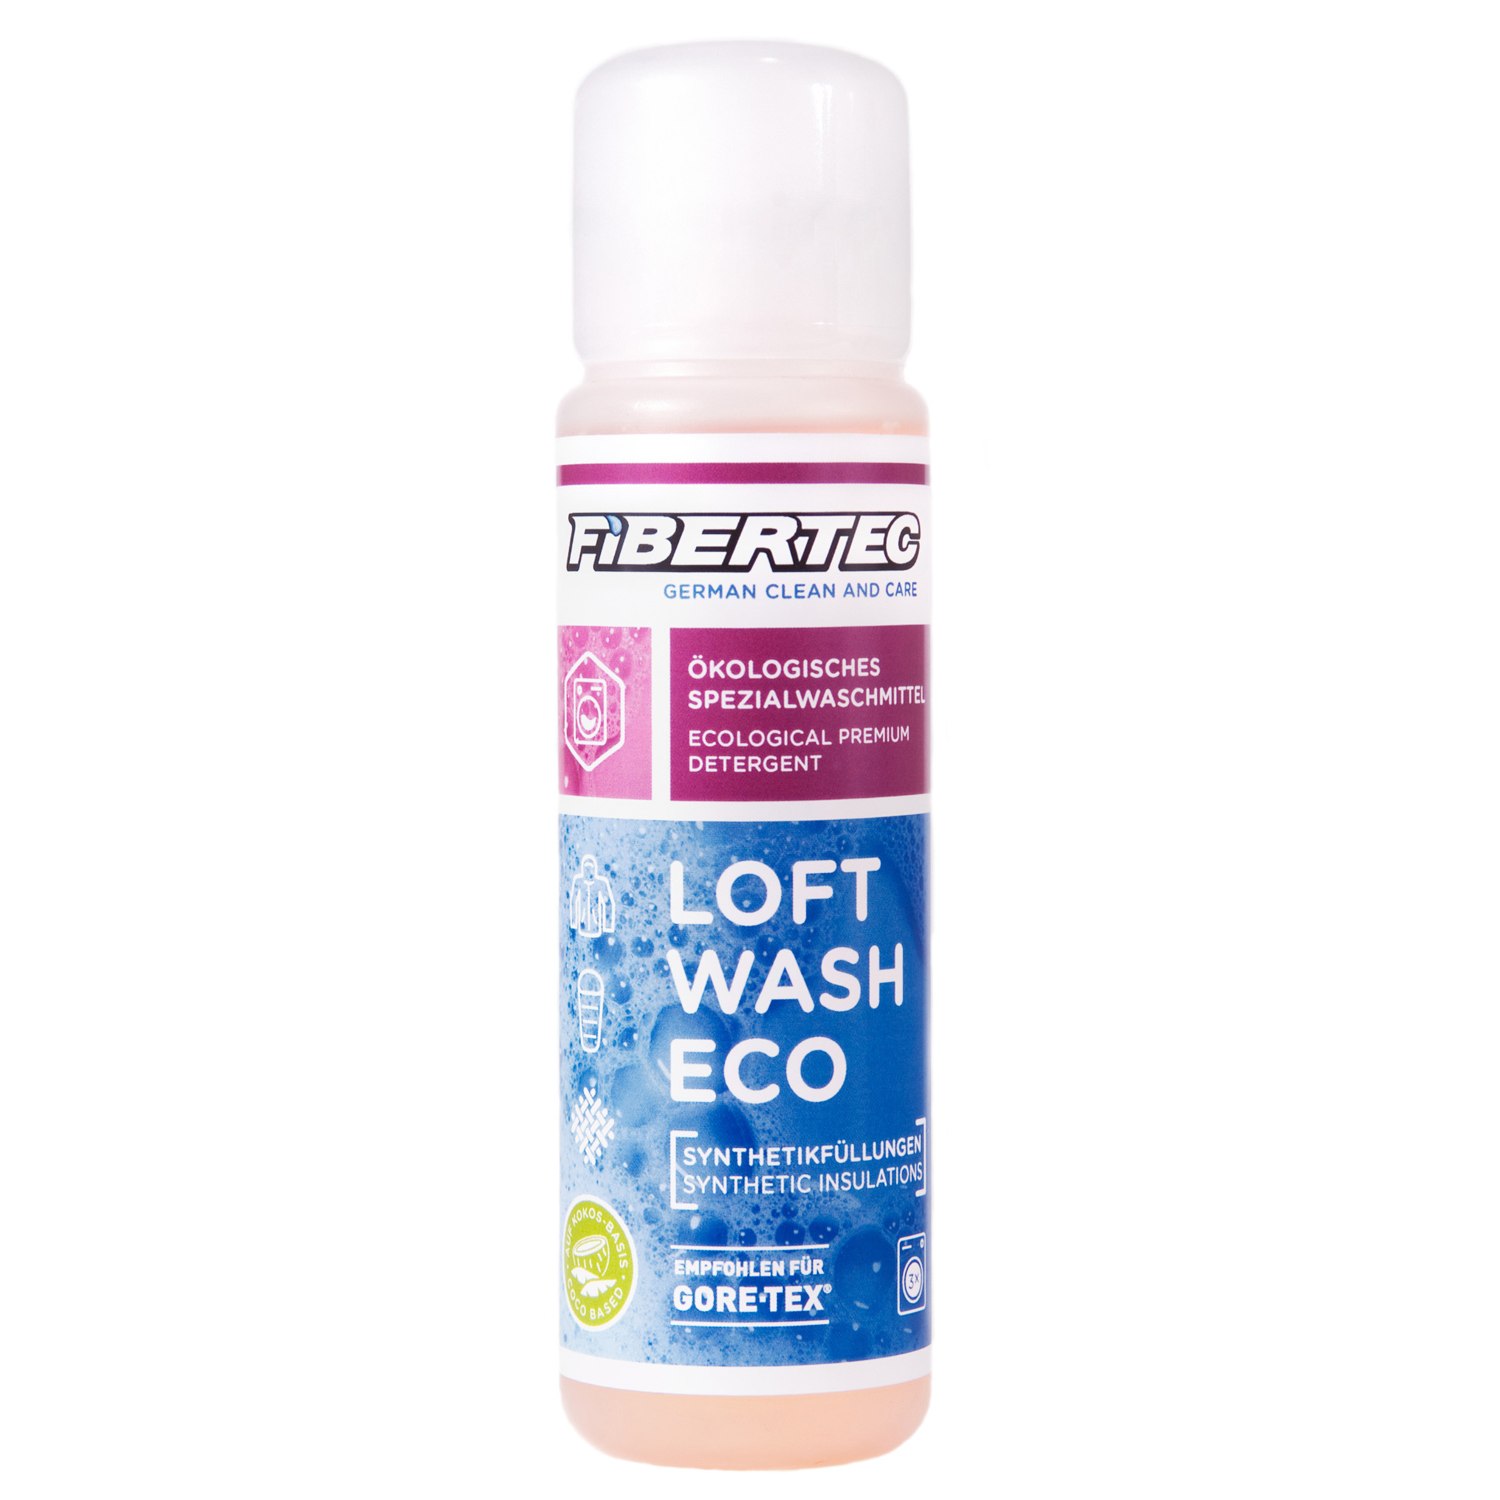 Produktbild von Fibertec Loft Wash Eco Spezialwaschmittel für Synthetikfüllungen 100 ml